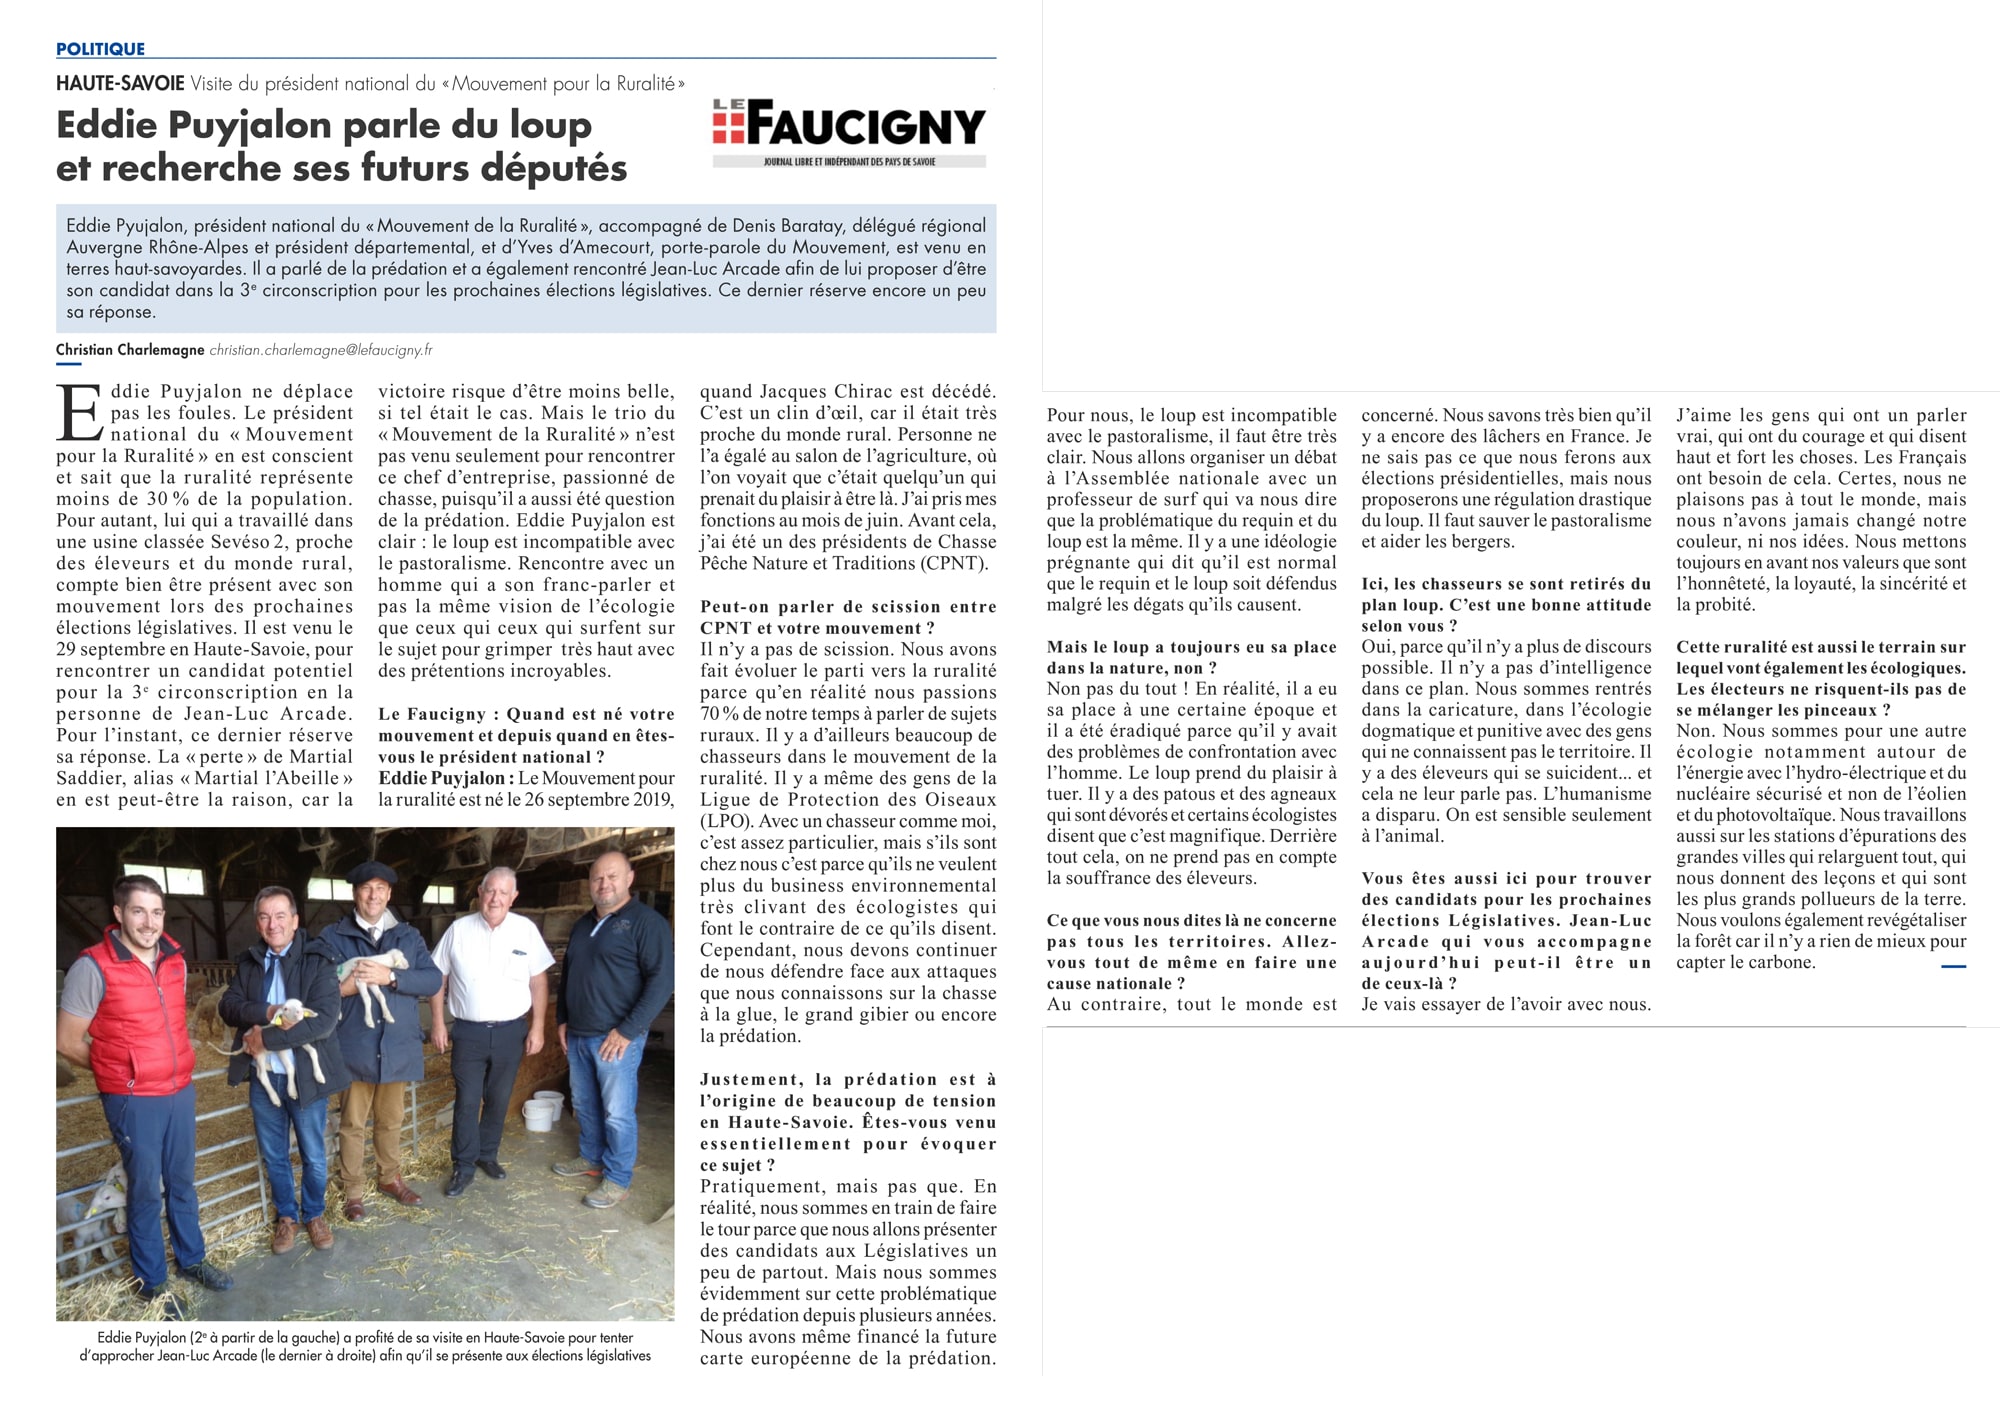 Article Le faucigny